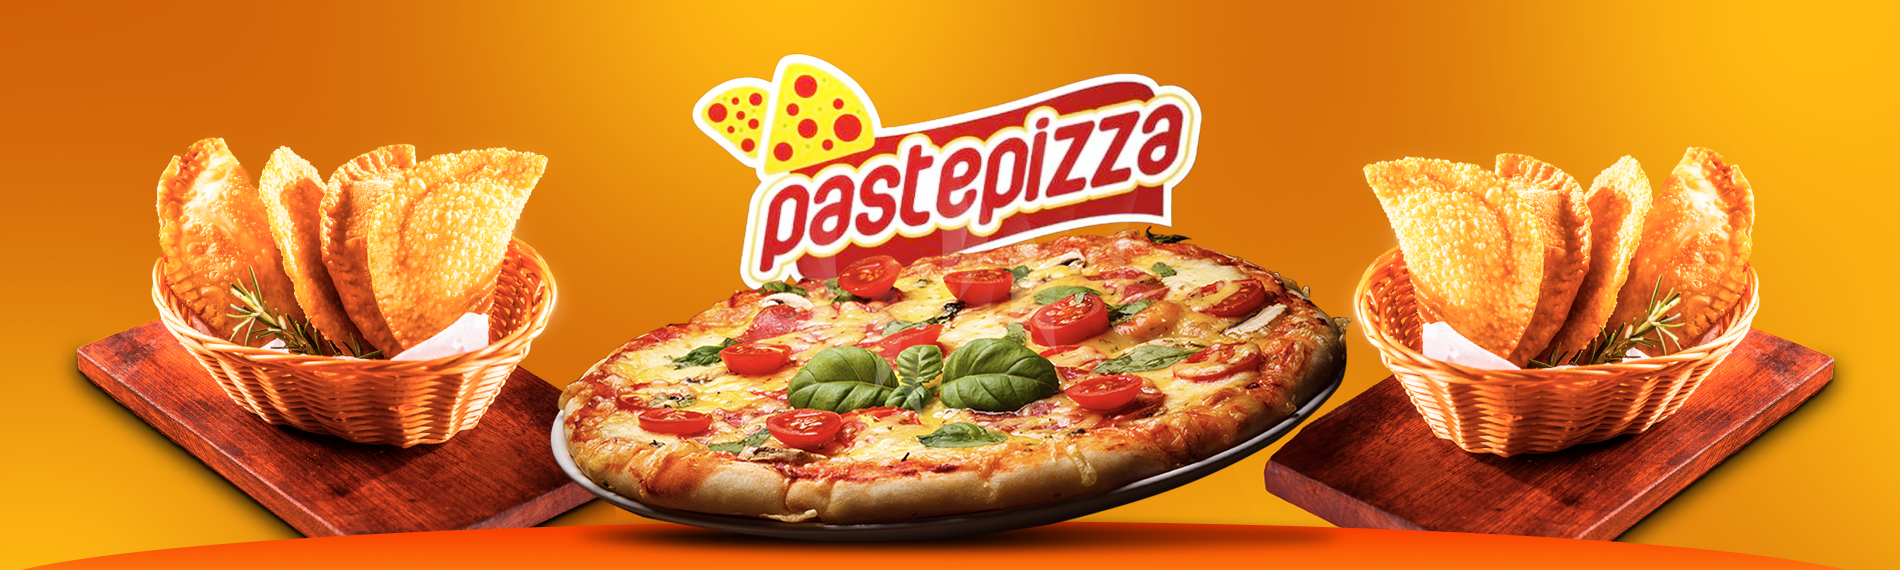 banner da empresa Pastepizza Pizzaria e Hamburgueria